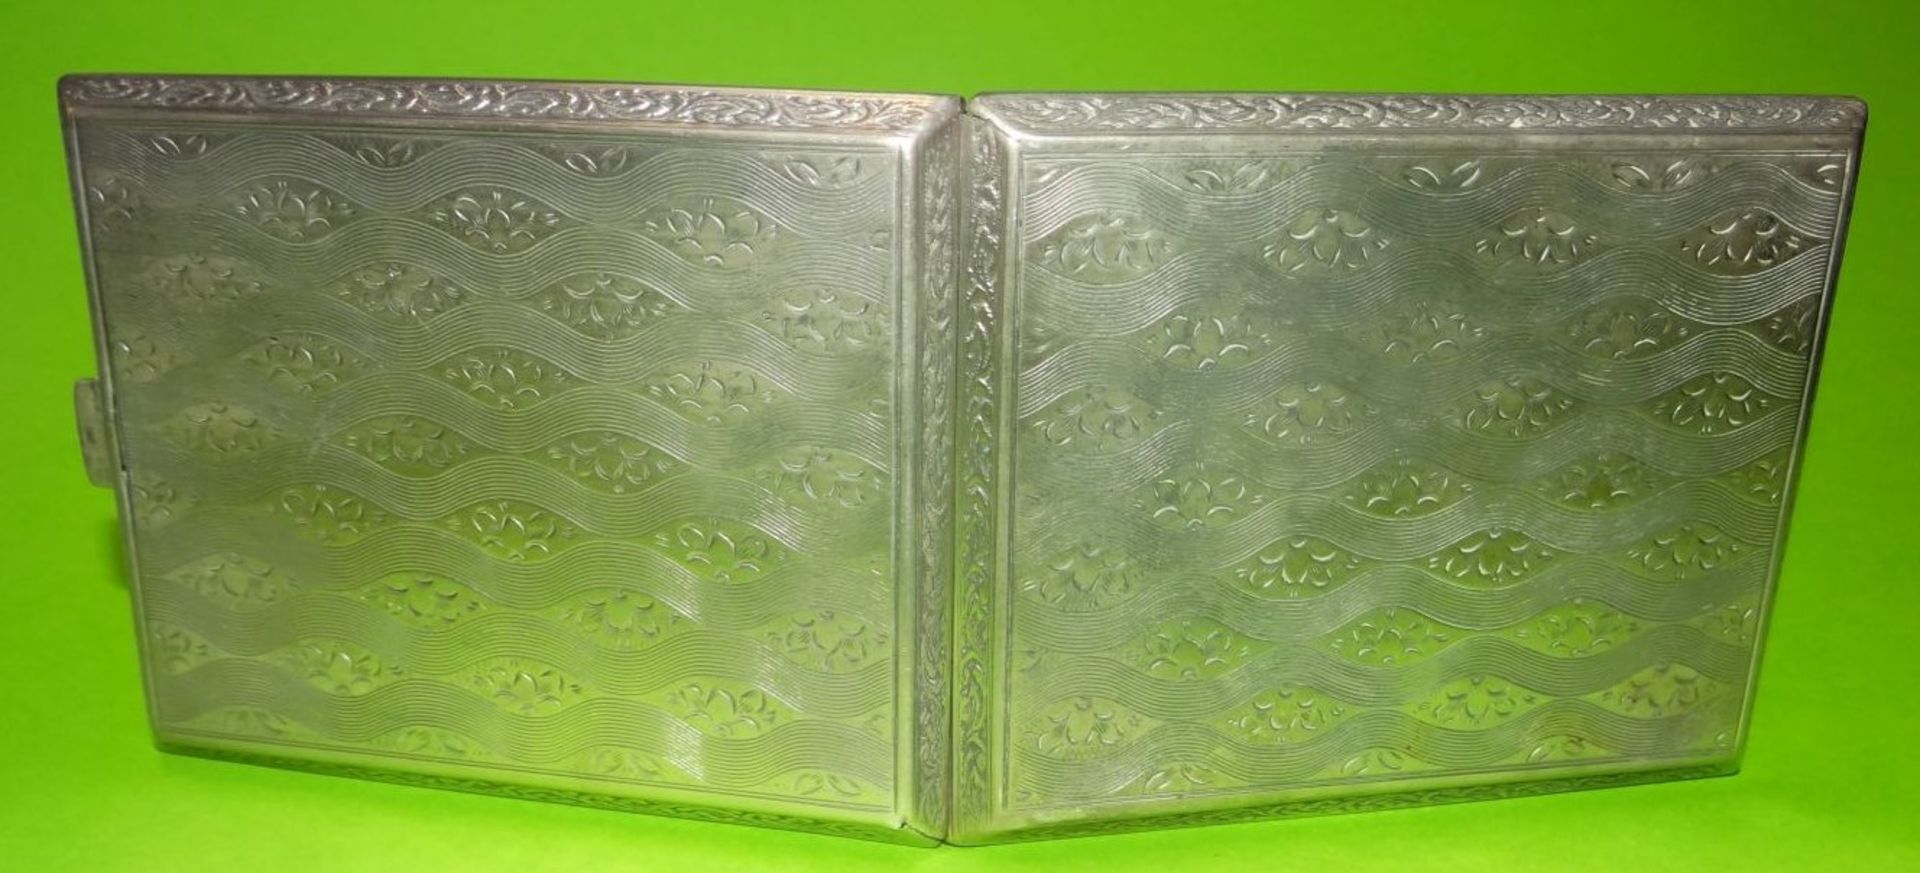 Silber-Zigarettenetui "Weihnachten 1928", 7,5x9,5 cm, 89 gramm, geprüf- - -22.61 % buyer's premium - Bild 5 aus 5